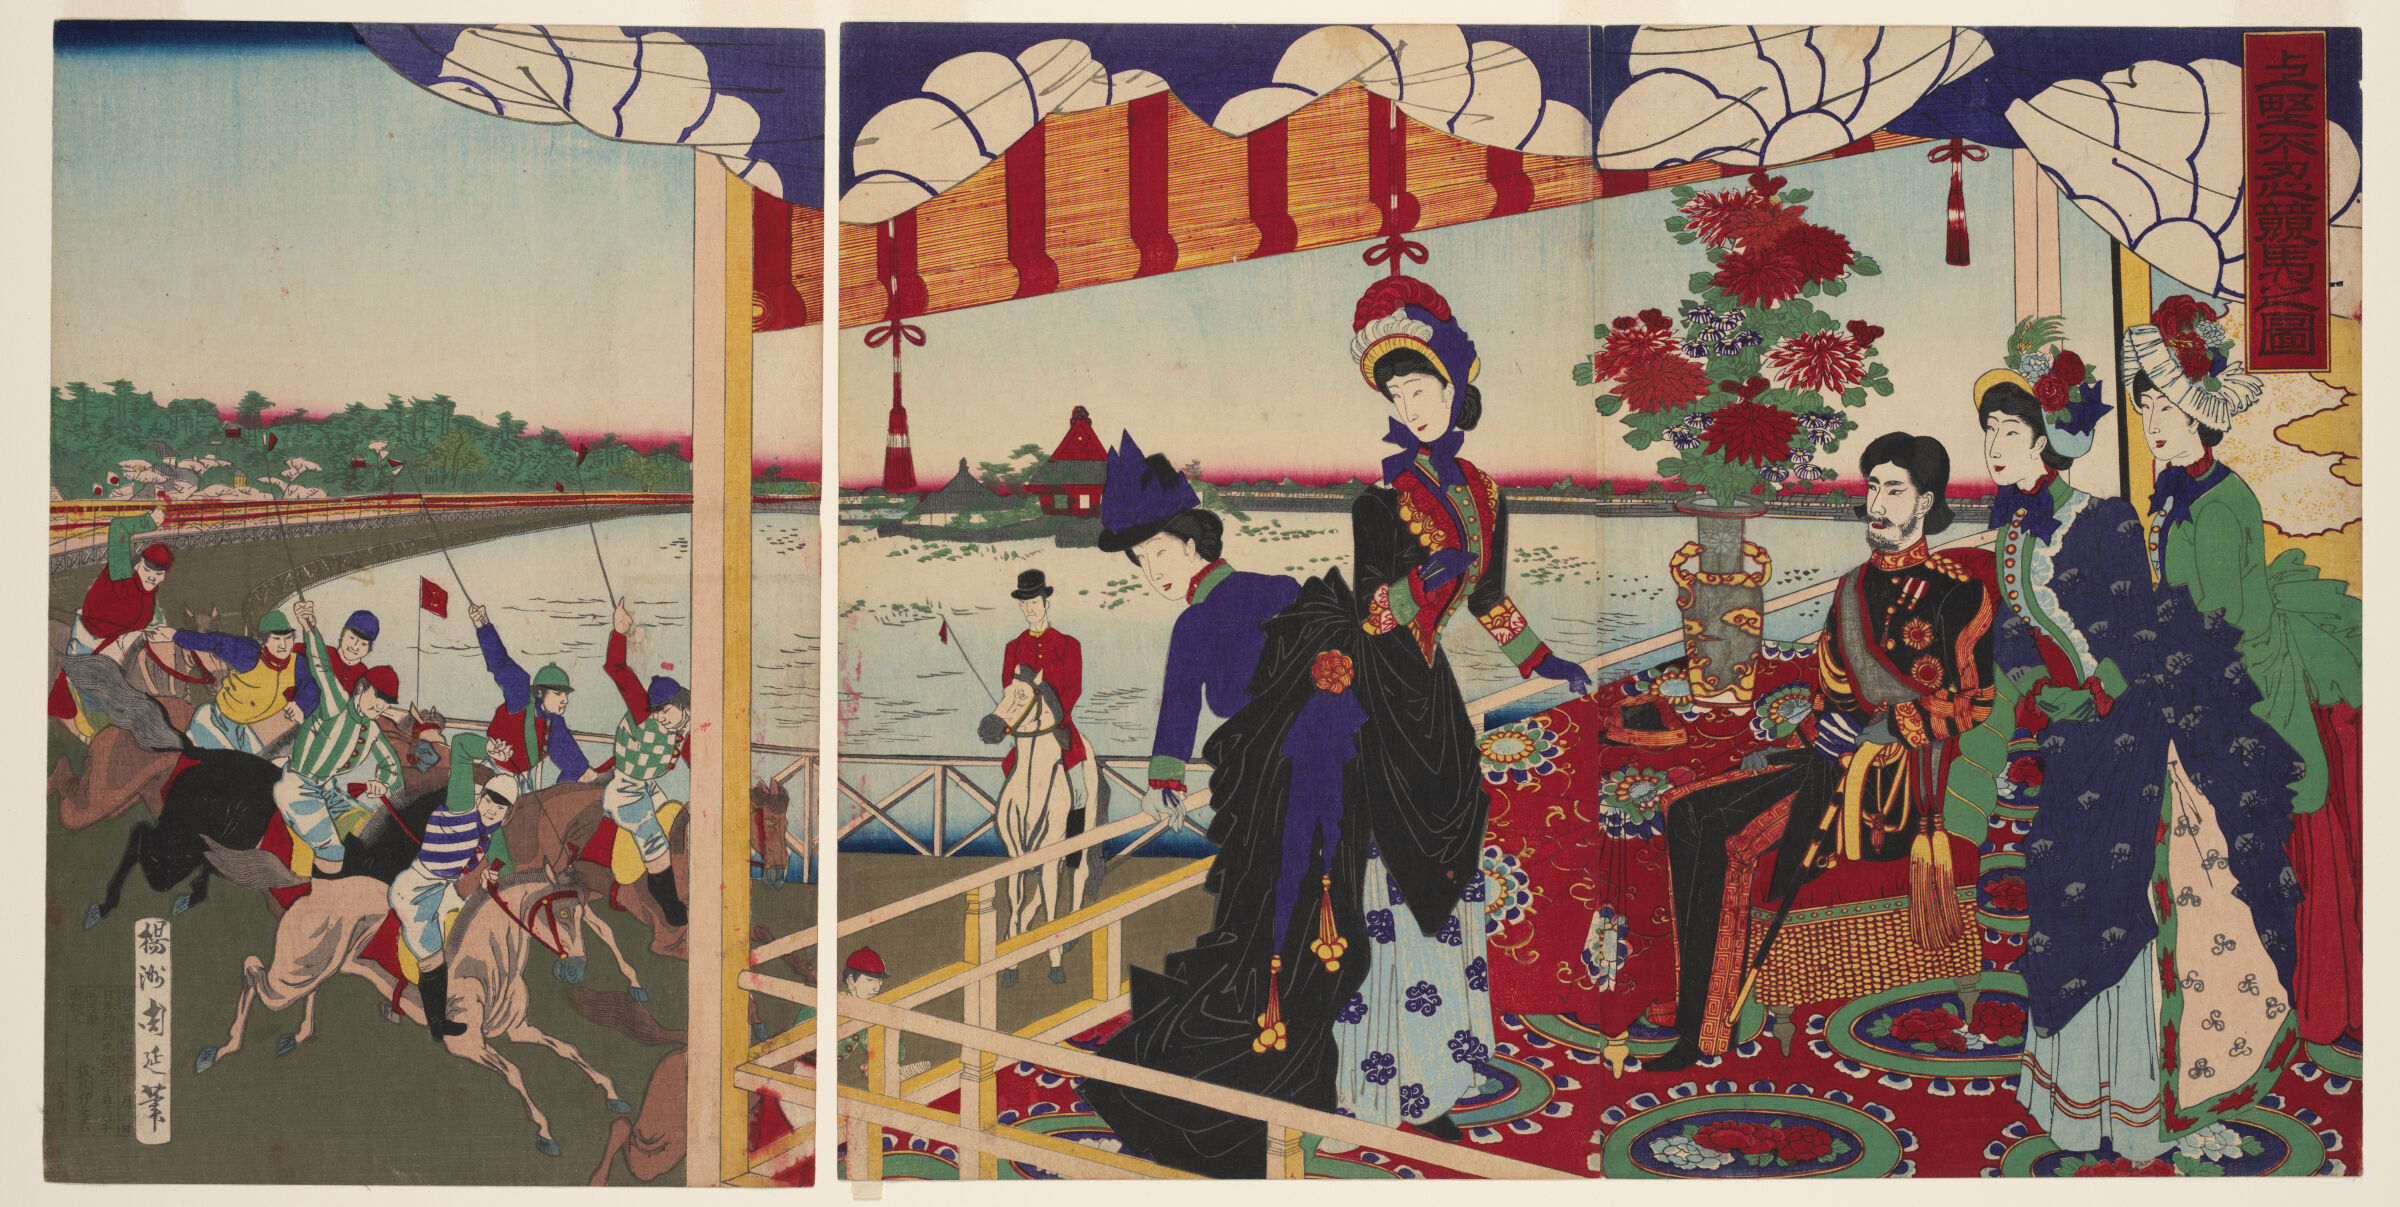 Triptych: Ueno Shinobazu Horserace